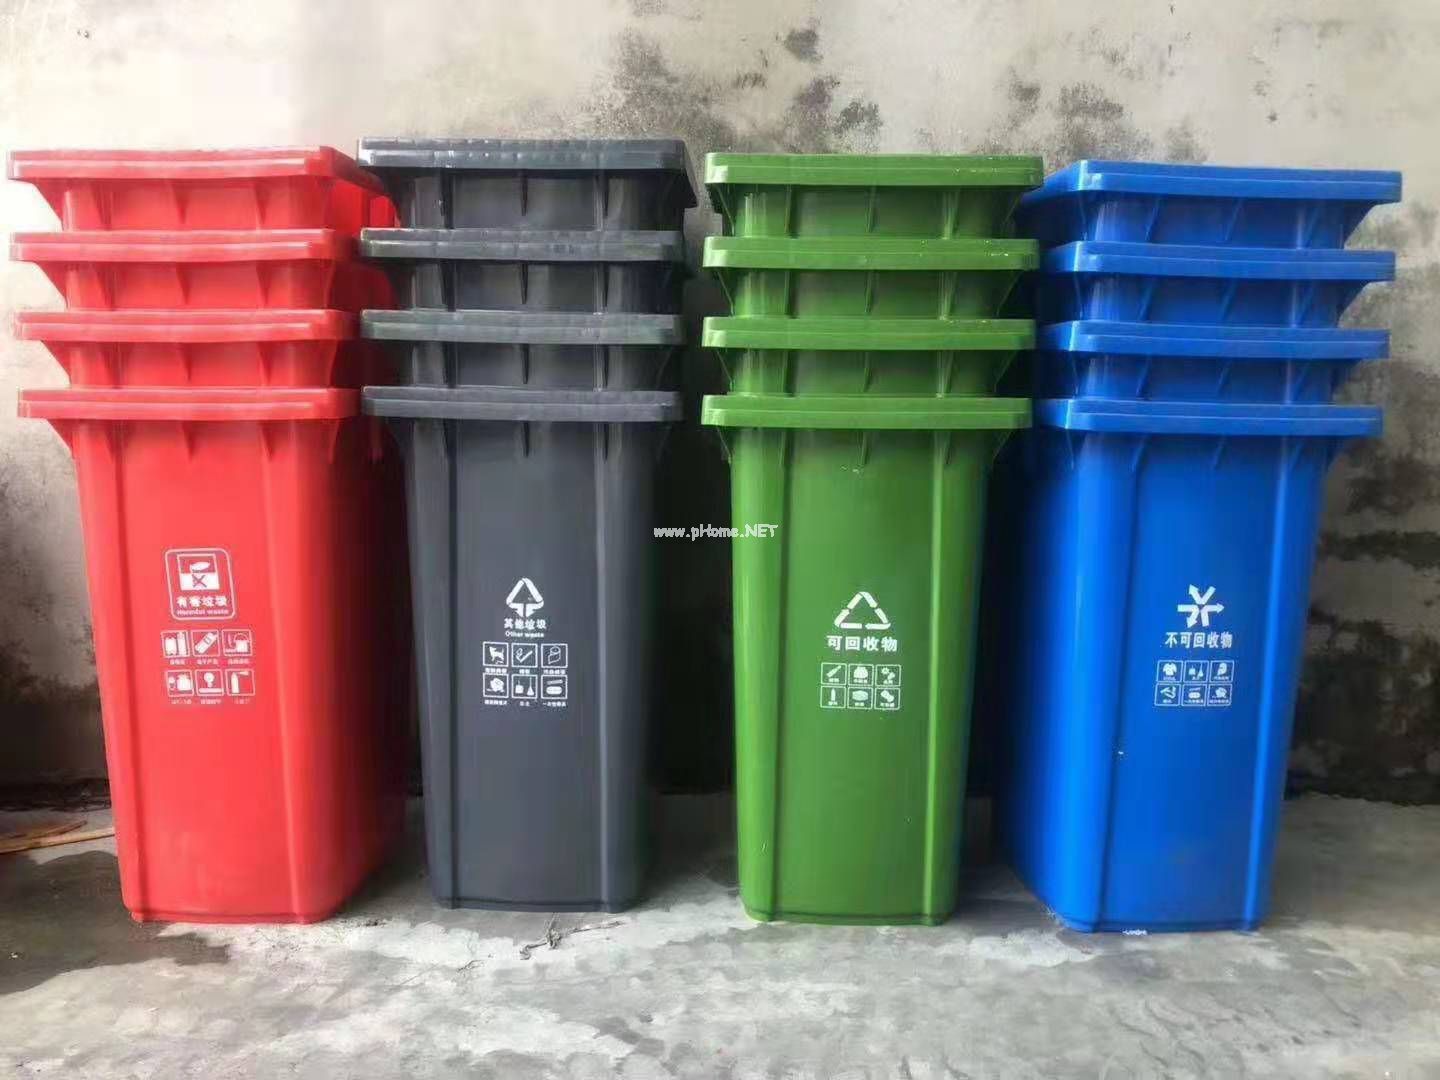 分類垃圾桶不同的清洗方法(圖文)